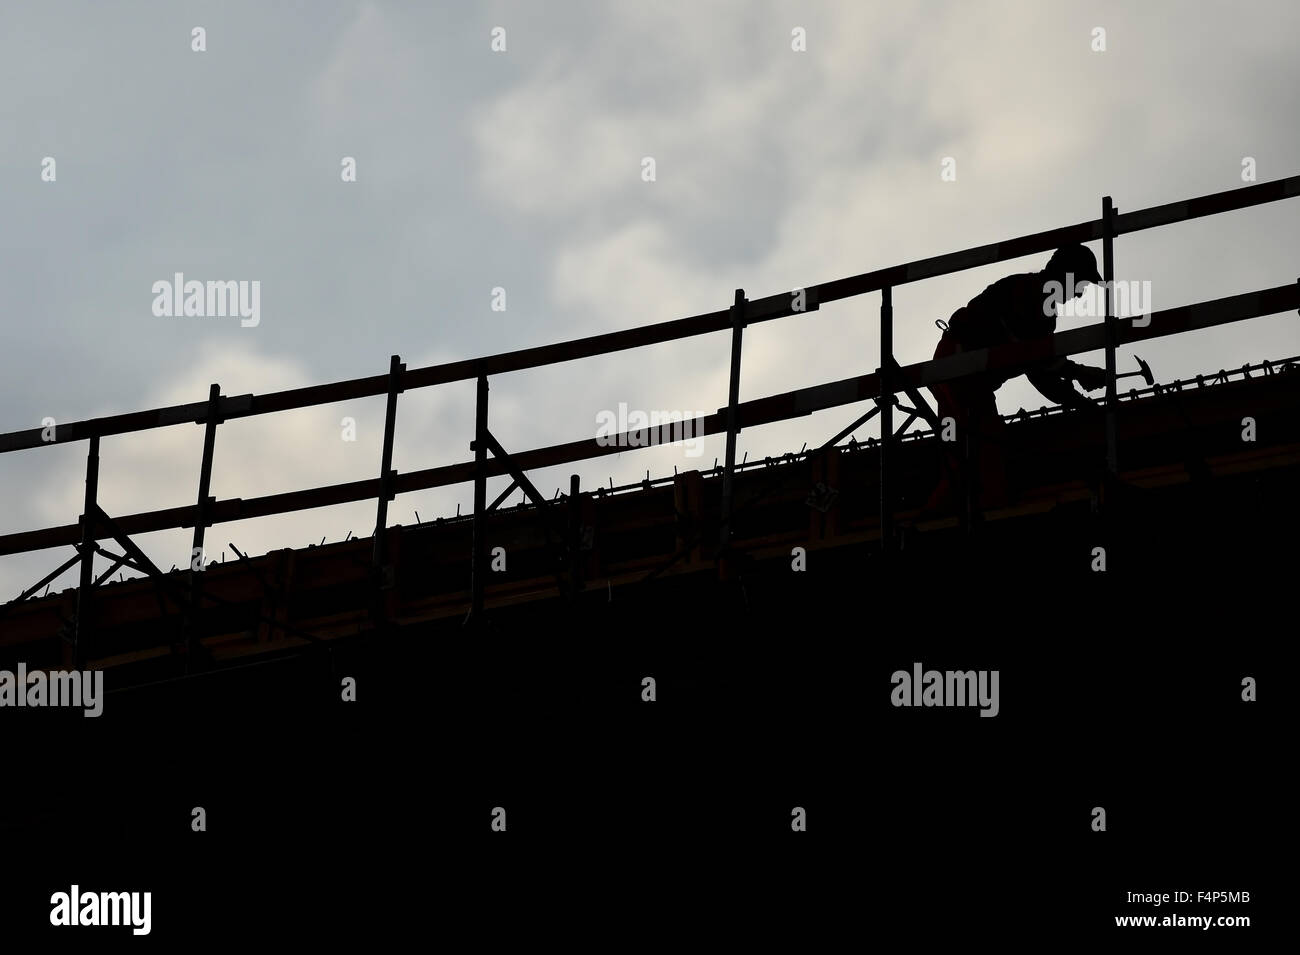 Bau Arbeiter Silhouette auf eine Konstruktion mit Coudy Himmel Hintergrund Stockfoto